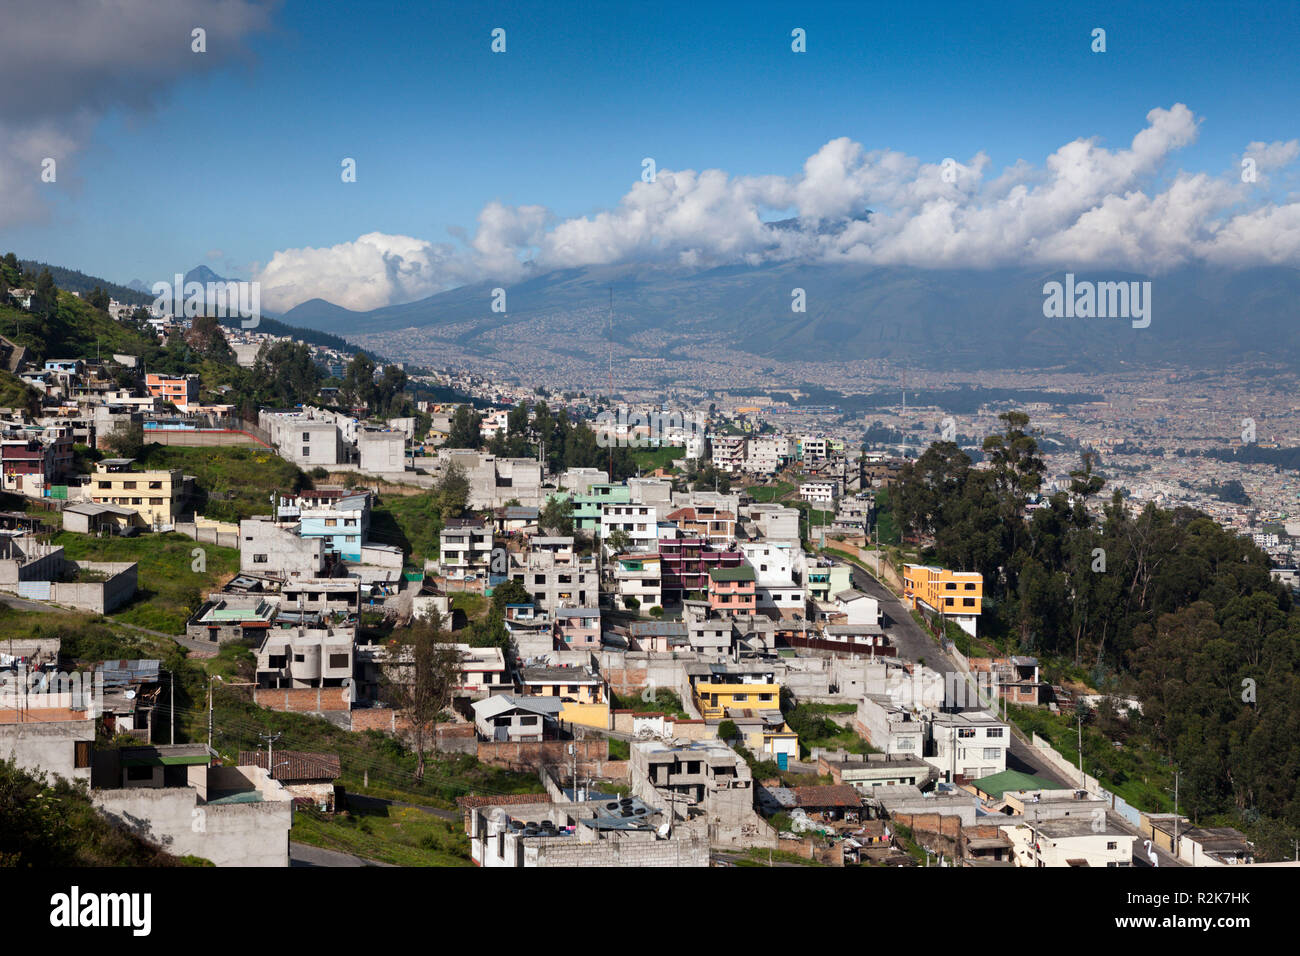 View of Capital Quito, Galapagos, Ecuador Stock Photo